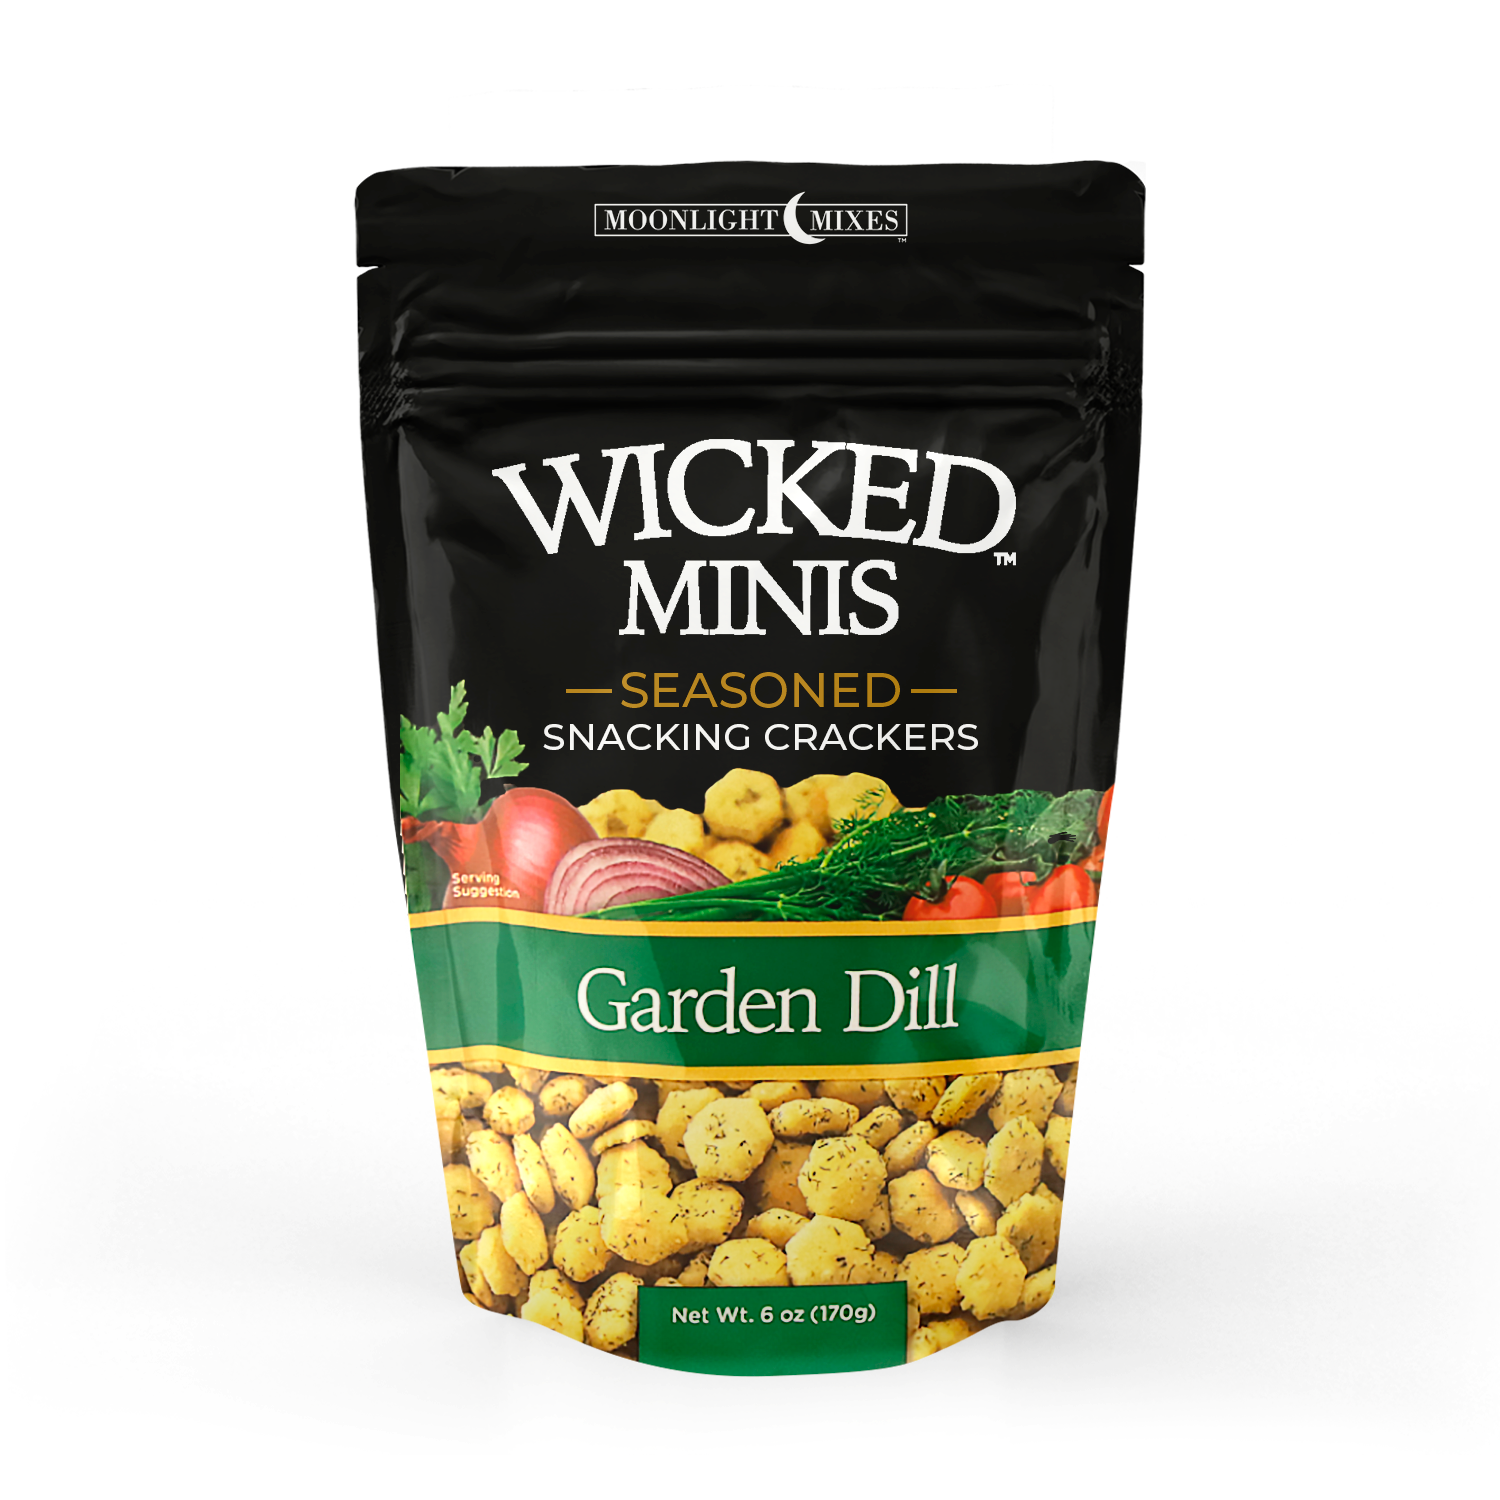 Wickles Wicked Garden Mix, 16oz – G&DFarms